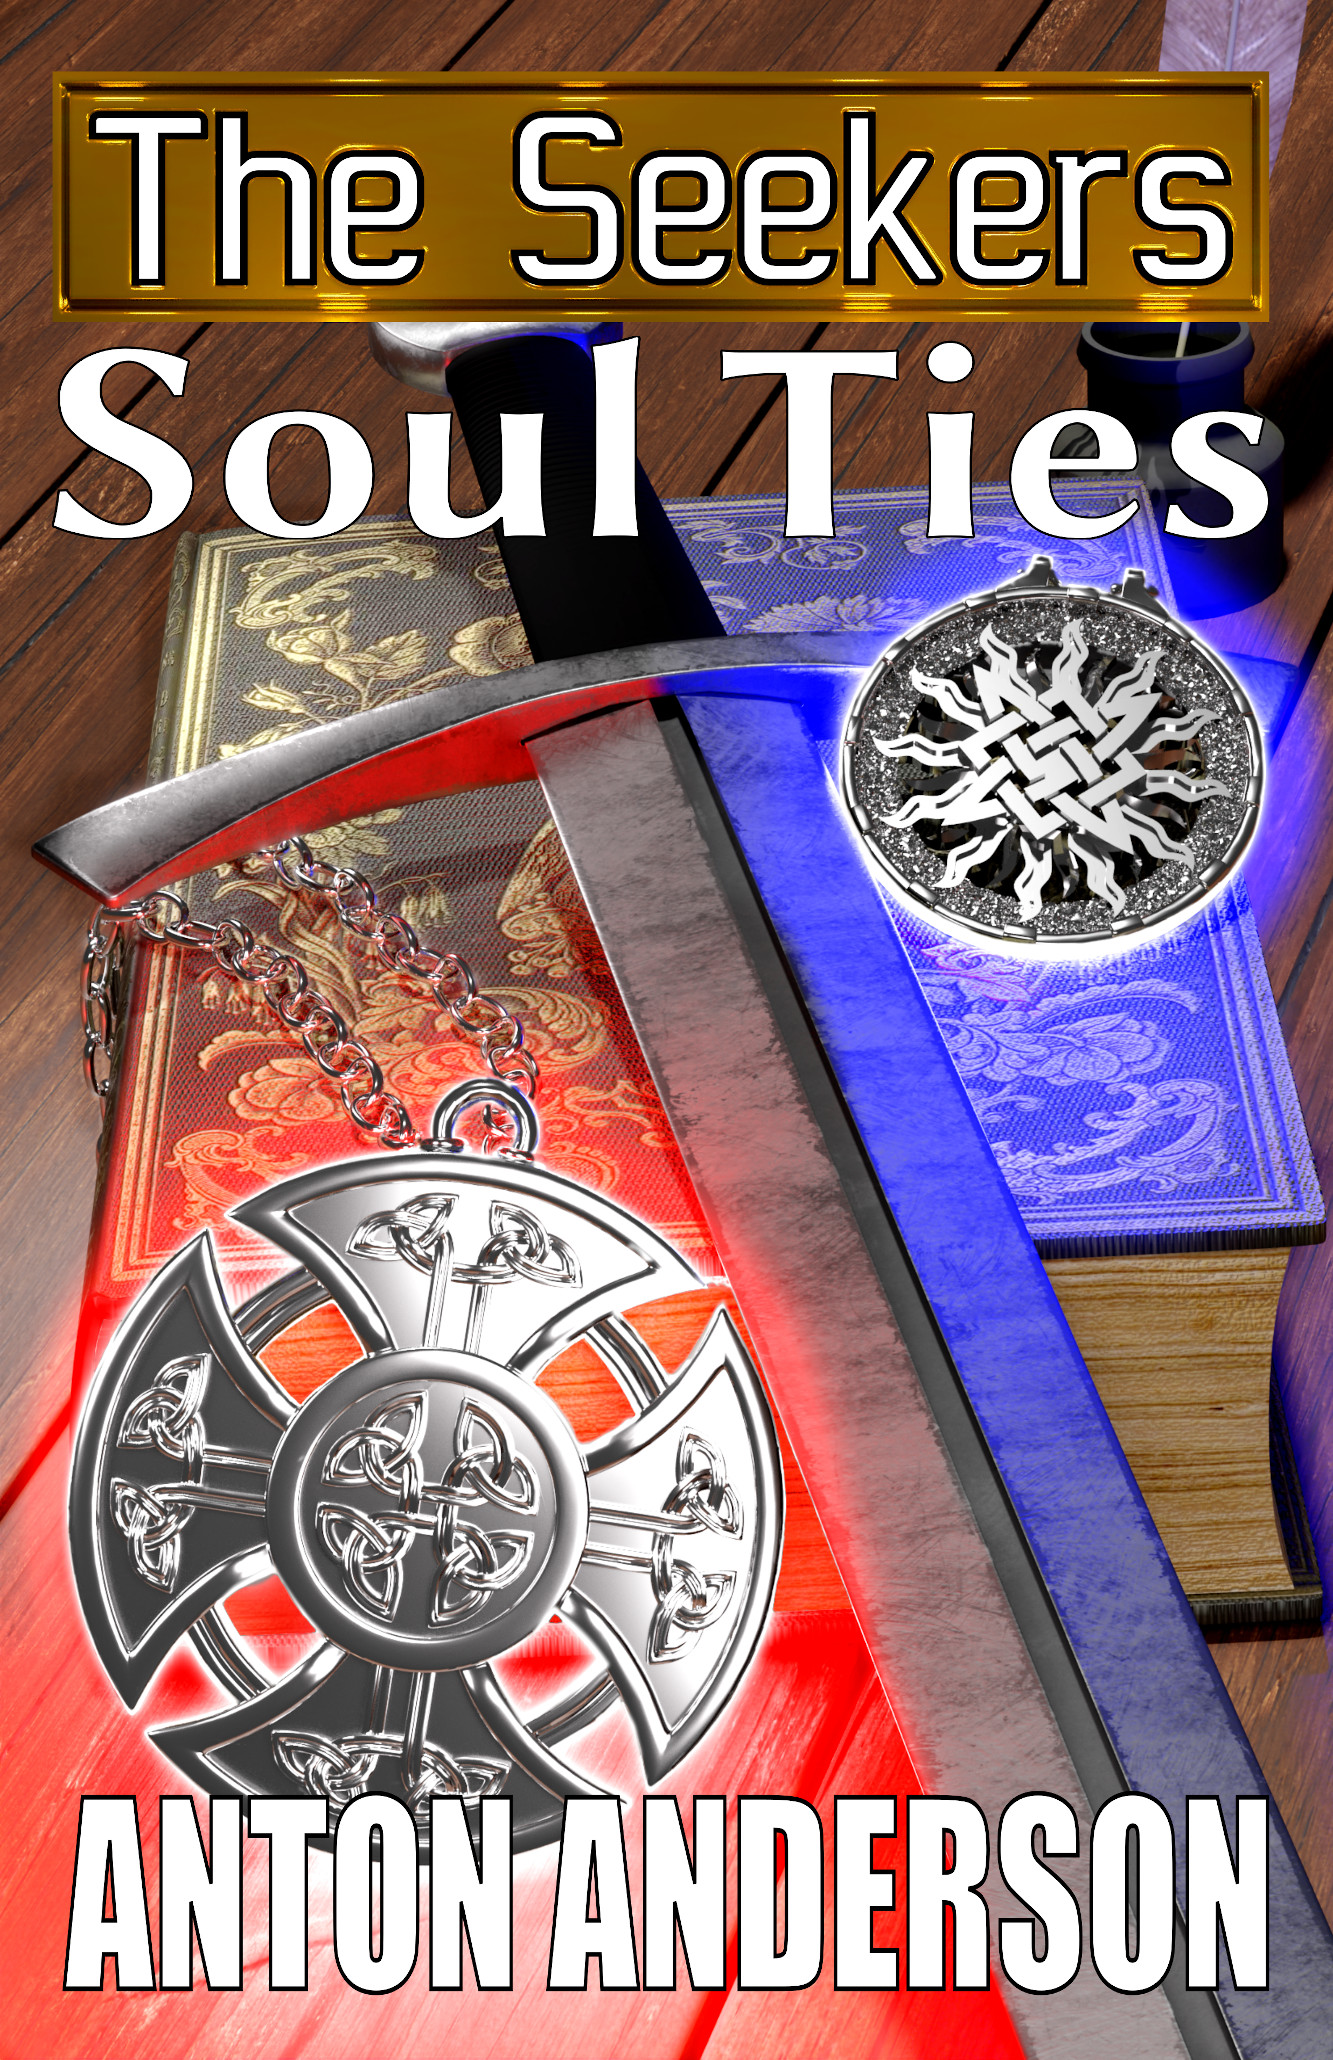 Soul Ties book cover